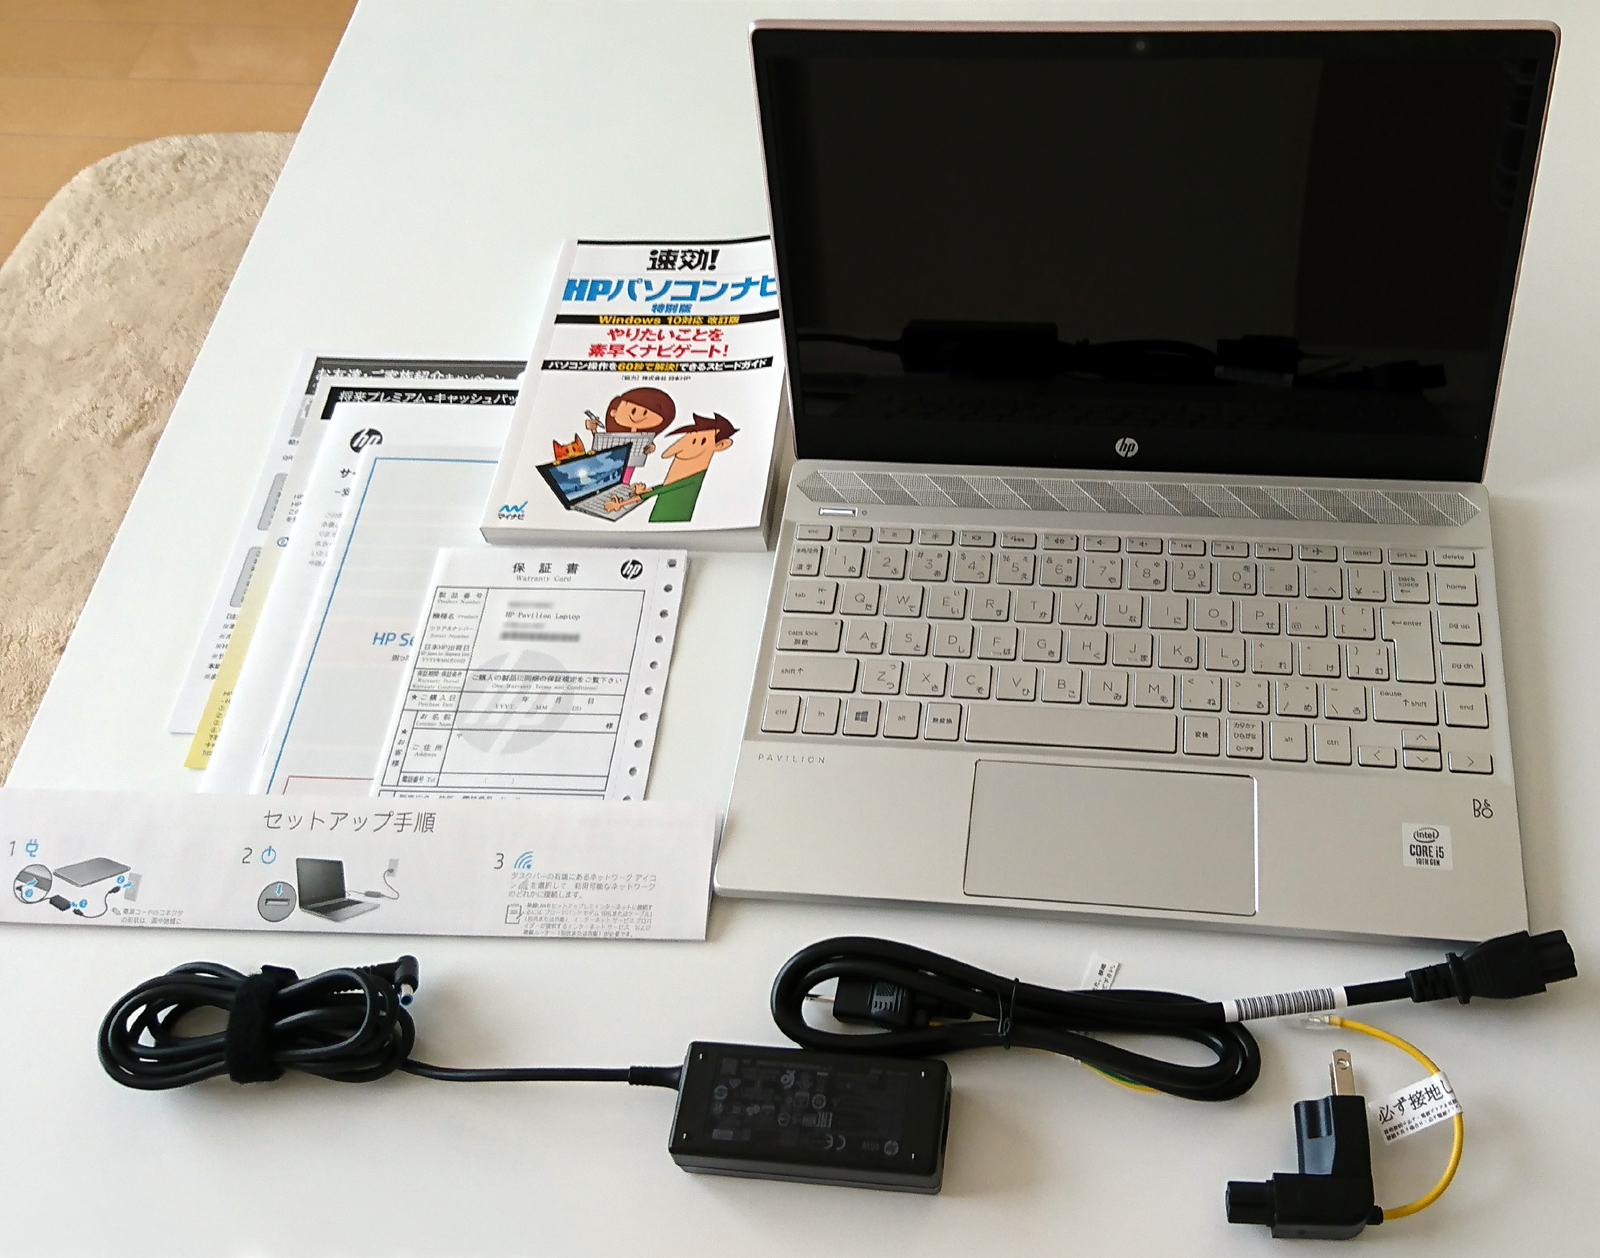 HPモバイルノート購入 for オンライン授業: Nerinoのブログ